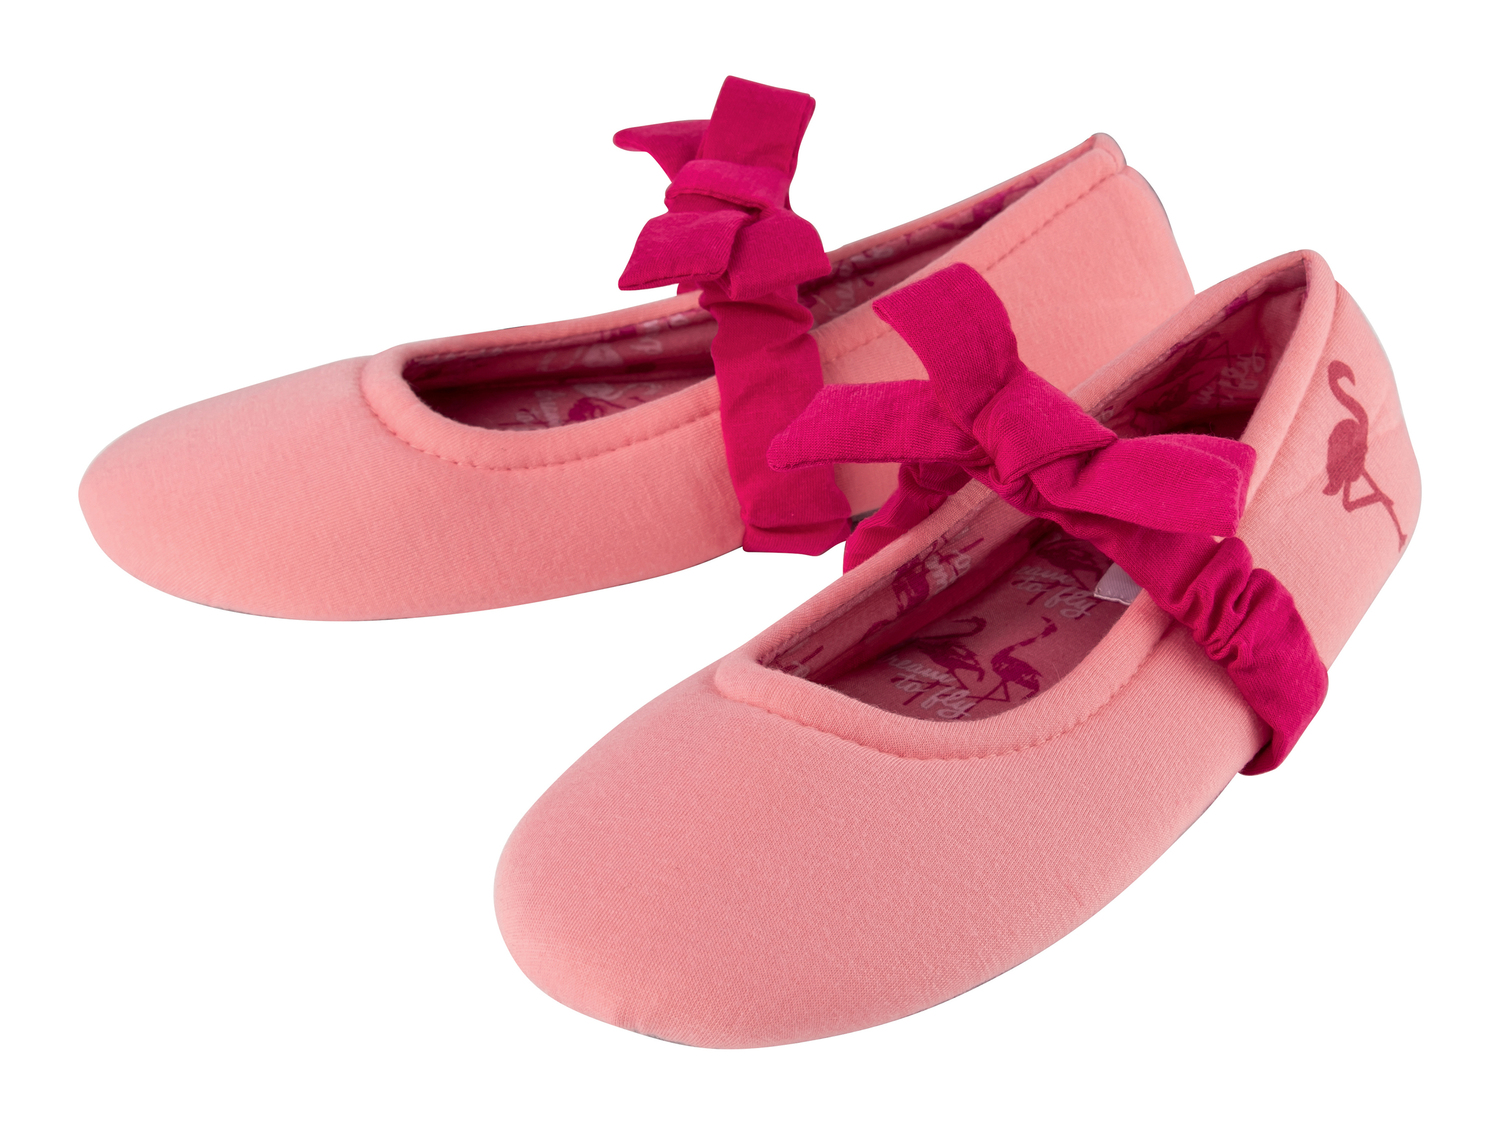 Pantofole a ballerina da donna Esmara, prezzo 3.99 € 
Misure: 36-41
Taglie disponibili

Caratteristiche ...